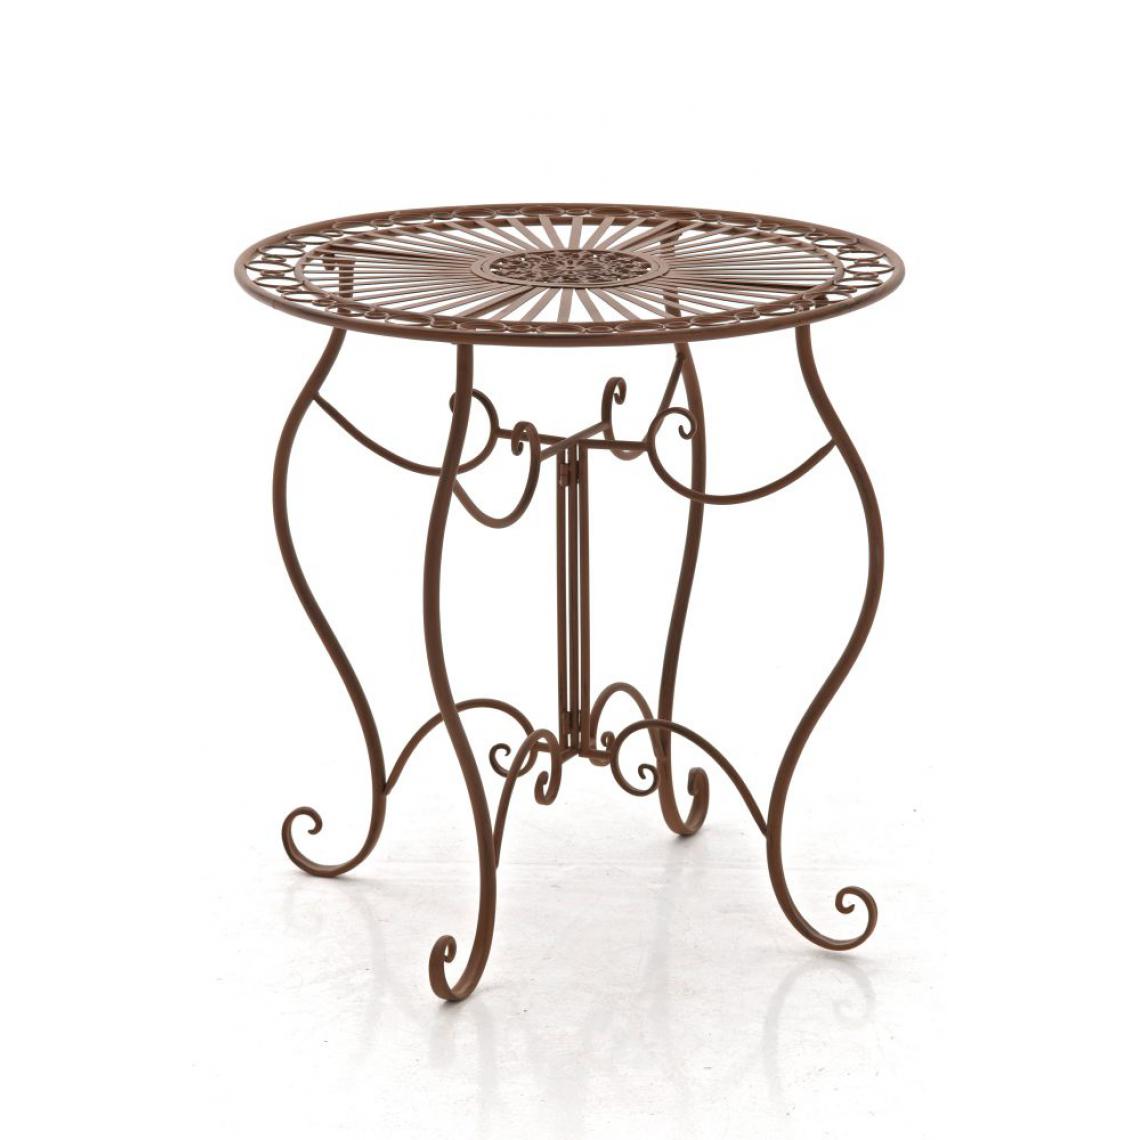 Icaverne - Contemporain Table serie Addis-Abeba couleur brun antique - Ensembles tables et chaises